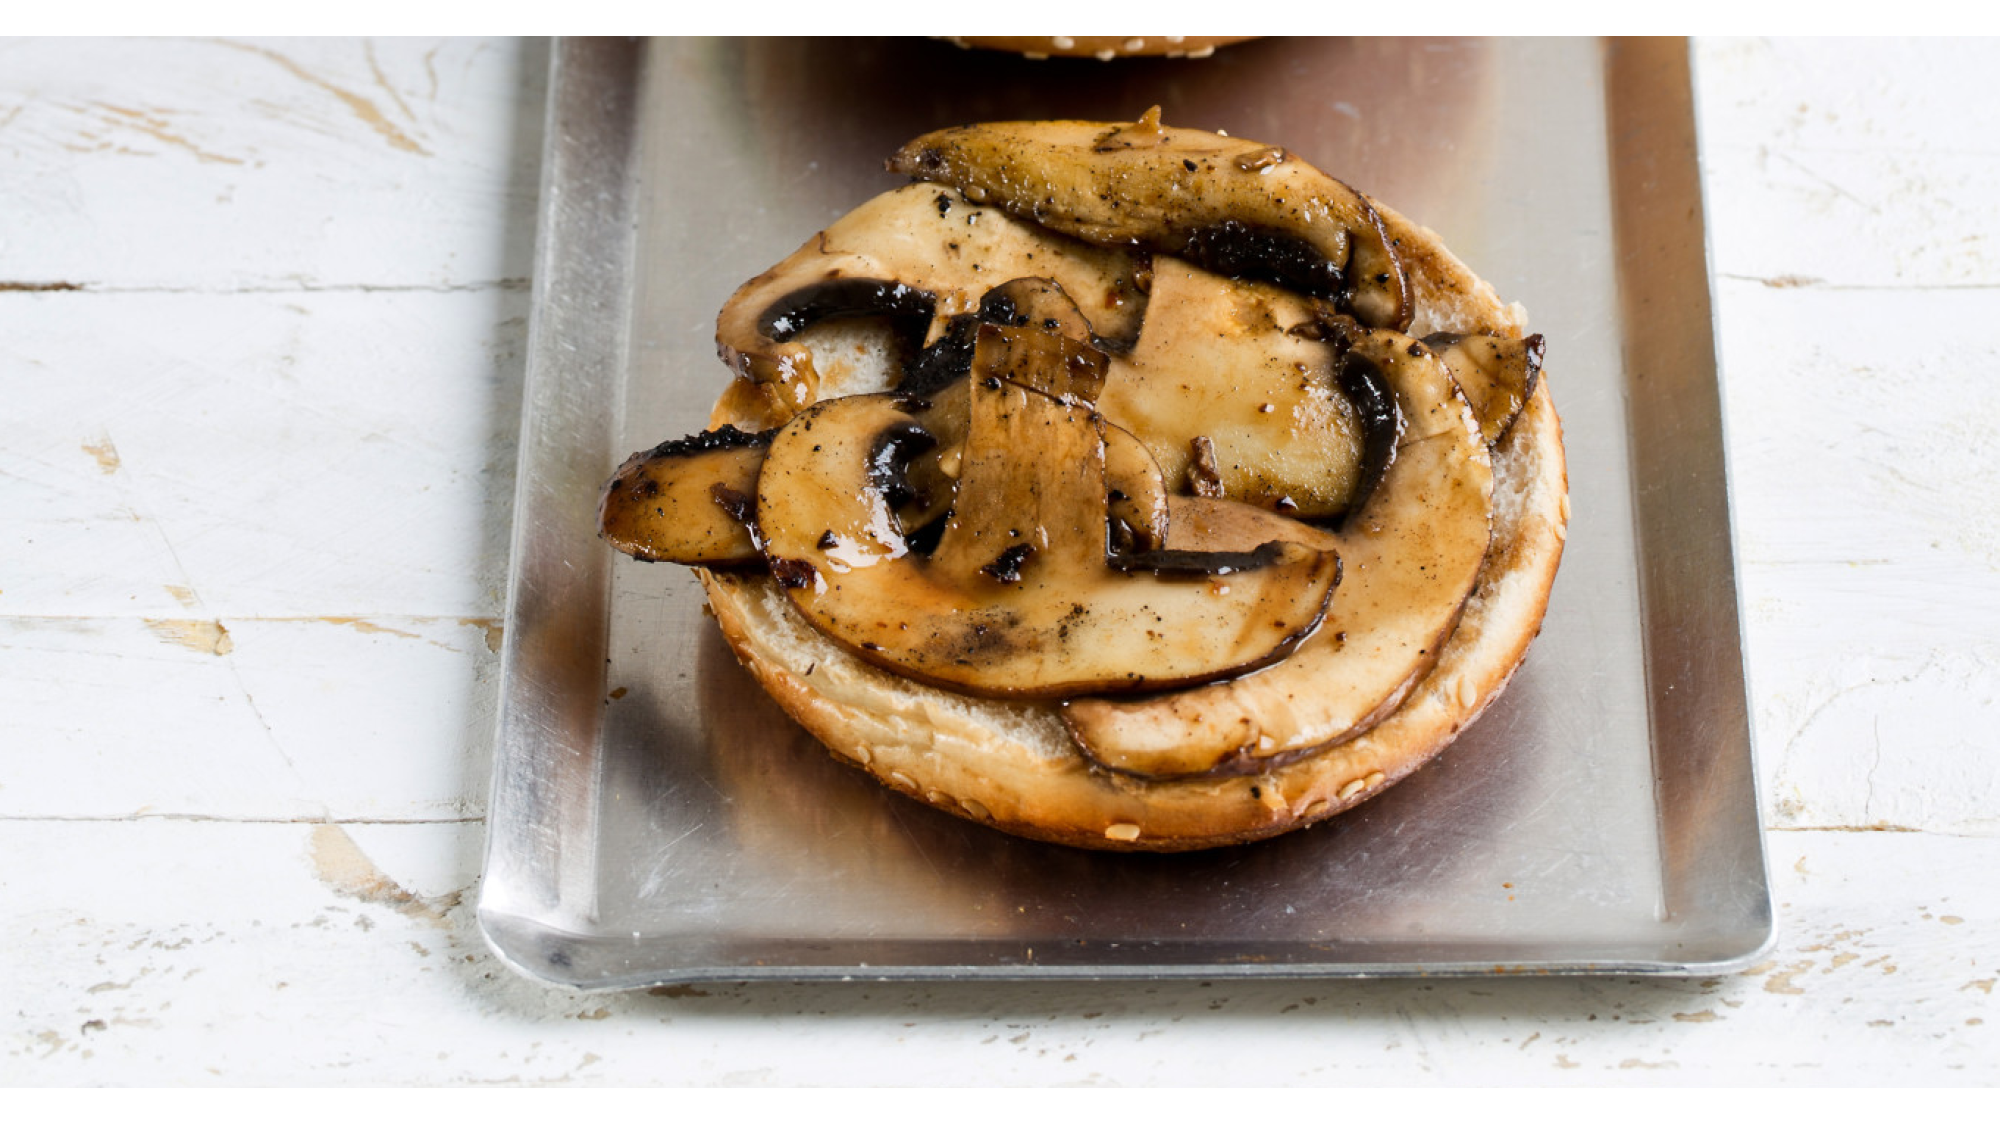 המבורגר פטריות צמחוני של מושיק רוט צילום וסטיילינג: בועז לביא